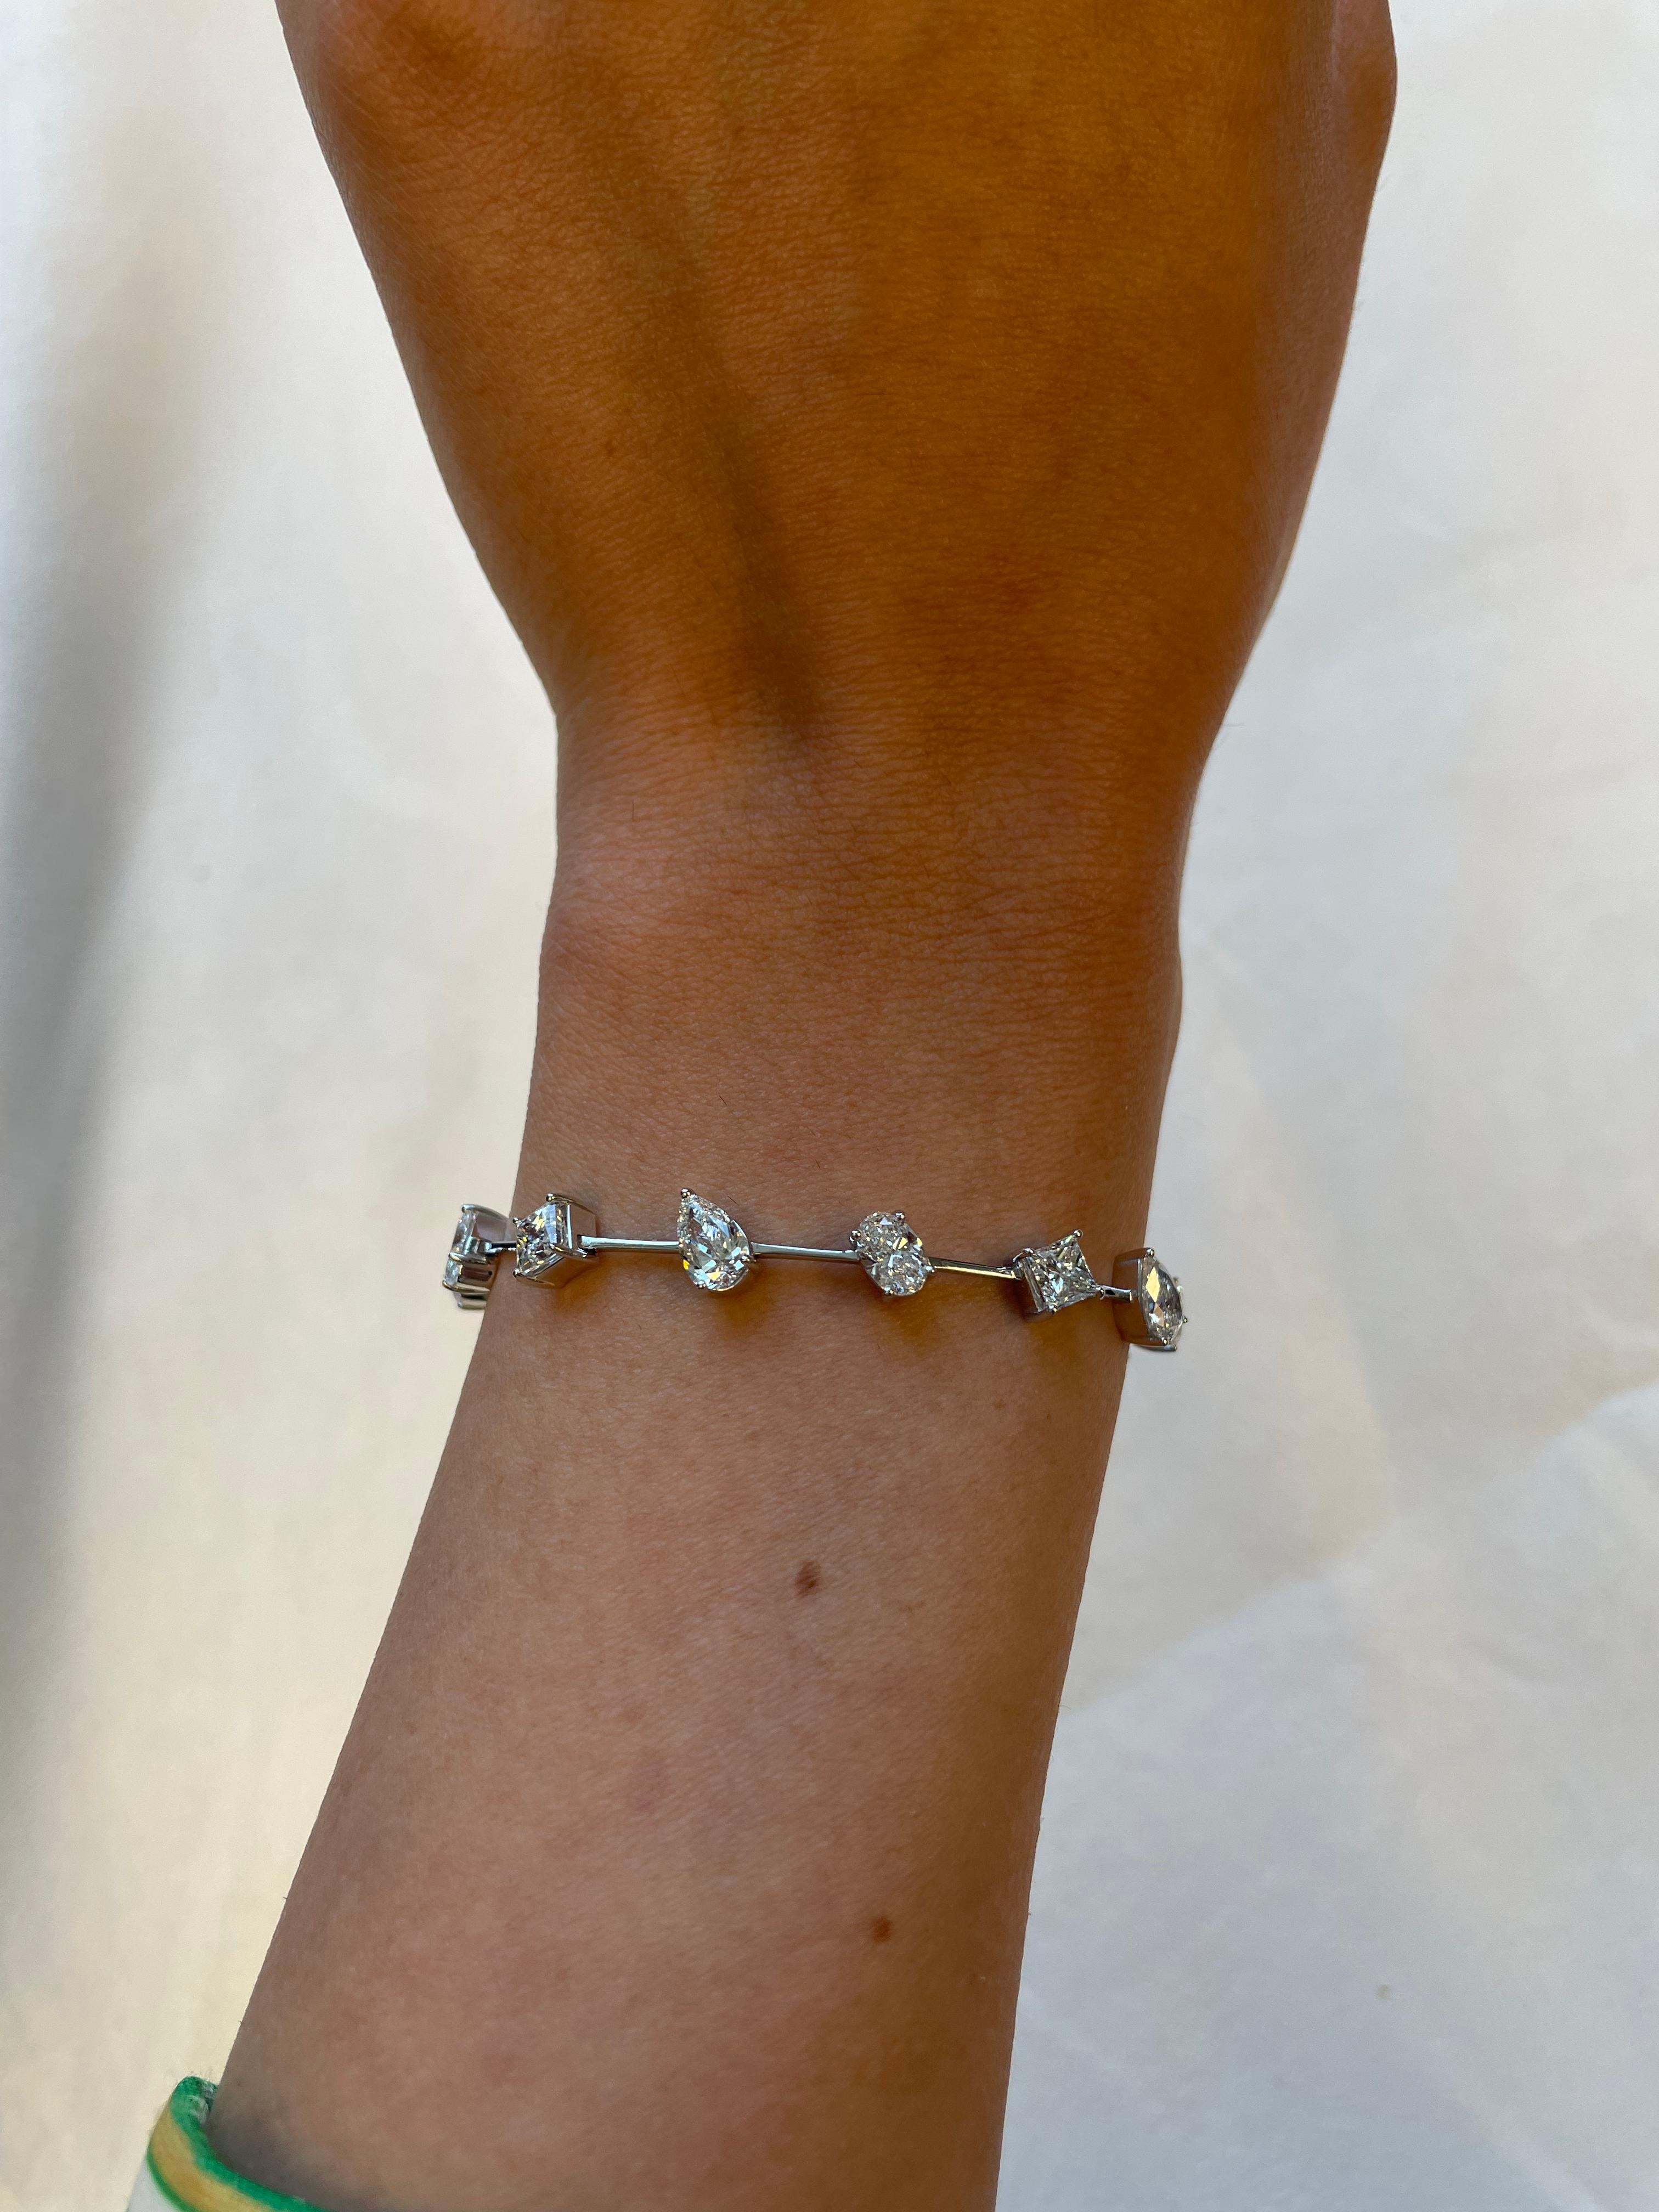 Superbe bracelet moderne à diamants mixtes, signé Alexander Beverly Hills.
15 diamants de forme poire, ovale et princesse, 7,52 carats (0,50ct en moyenne chacun). Couleur approximative G/H et clarté VS. or blanc 18 carats, 10,77 grammes, 7 pouces.